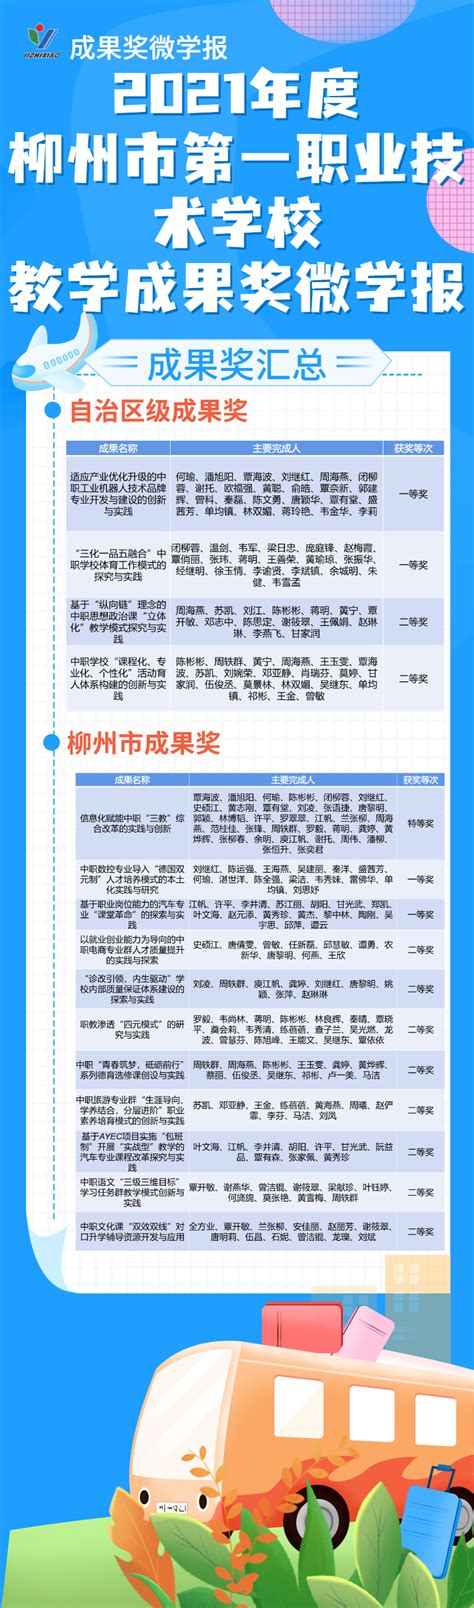 柳州市第一职业技术学校_广西职校_招生报考网